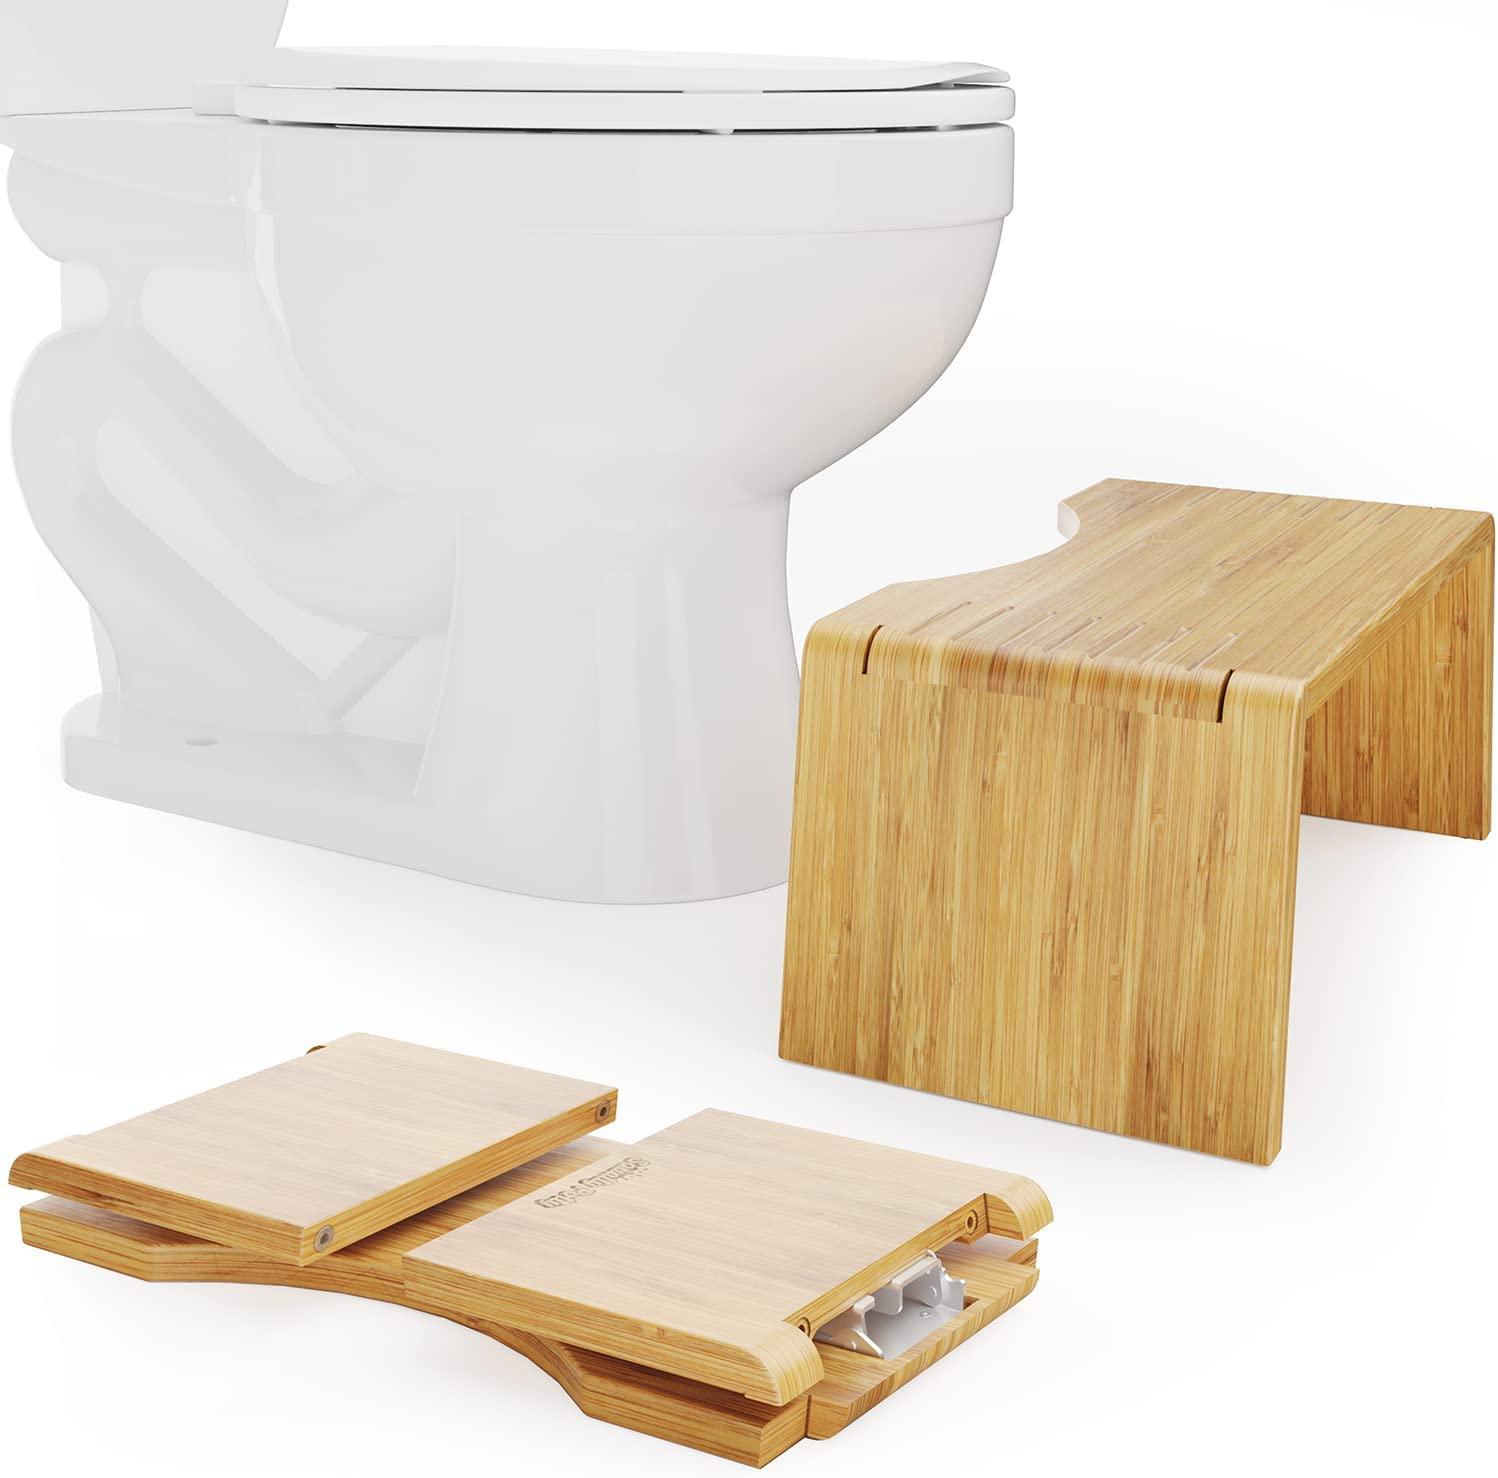 Squatty Potty Oslo Folding Bamboo Toilet Stool